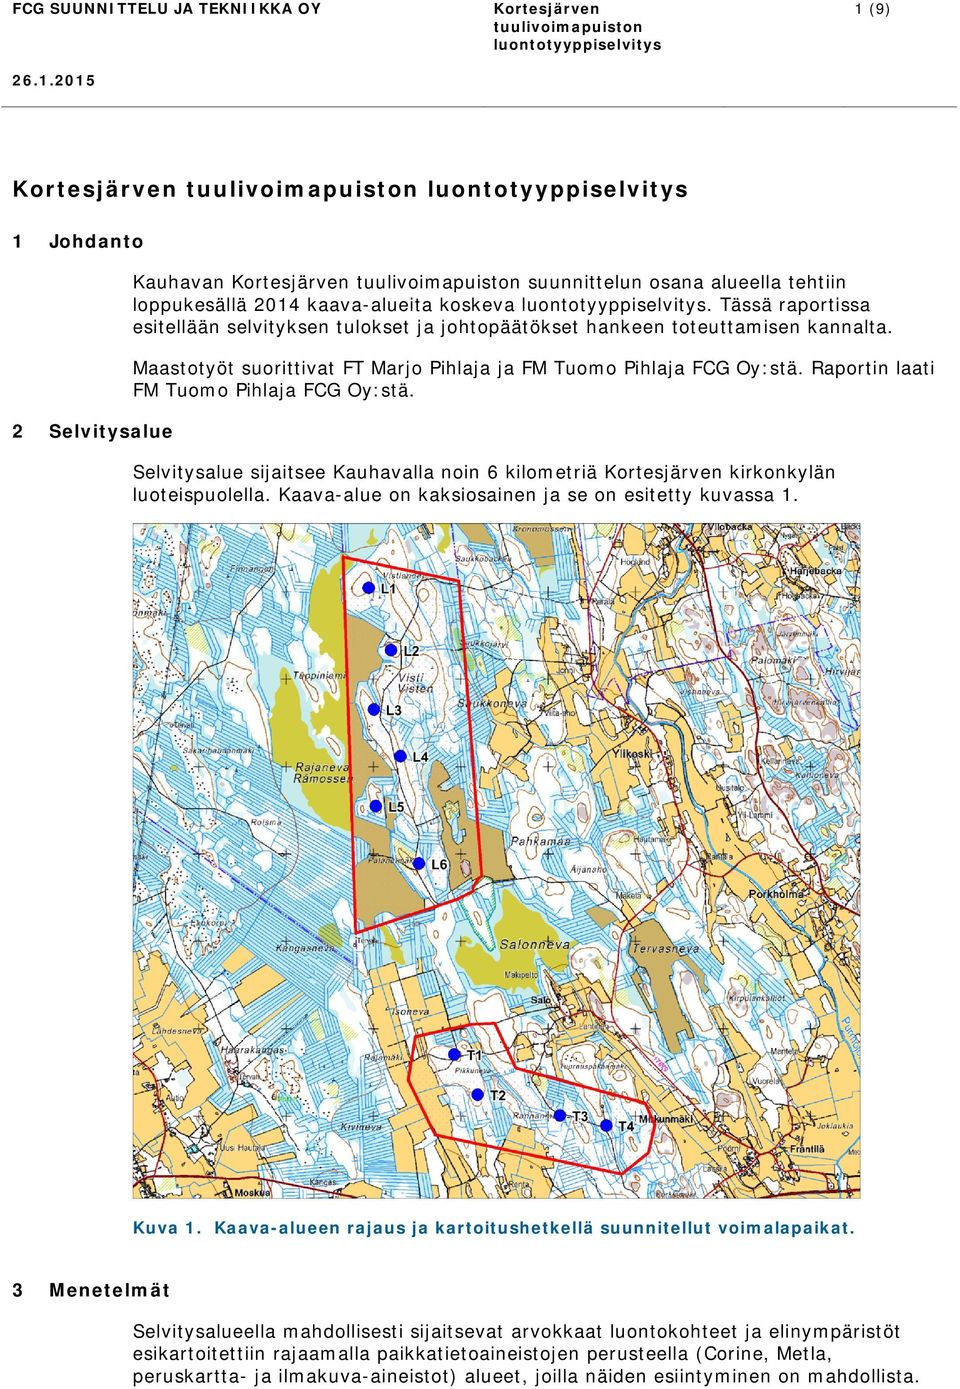 Raportin laati FM Tuomo Pihlaja FCG Oy:stä. 2 Selvitysalue Selvitysalue sijaitsee Kauhavalla noin 6 kilometriä kirkonkylän luoteispuolella. Kaava-alue on kaksiosainen ja se on esitetty kuvassa 1.